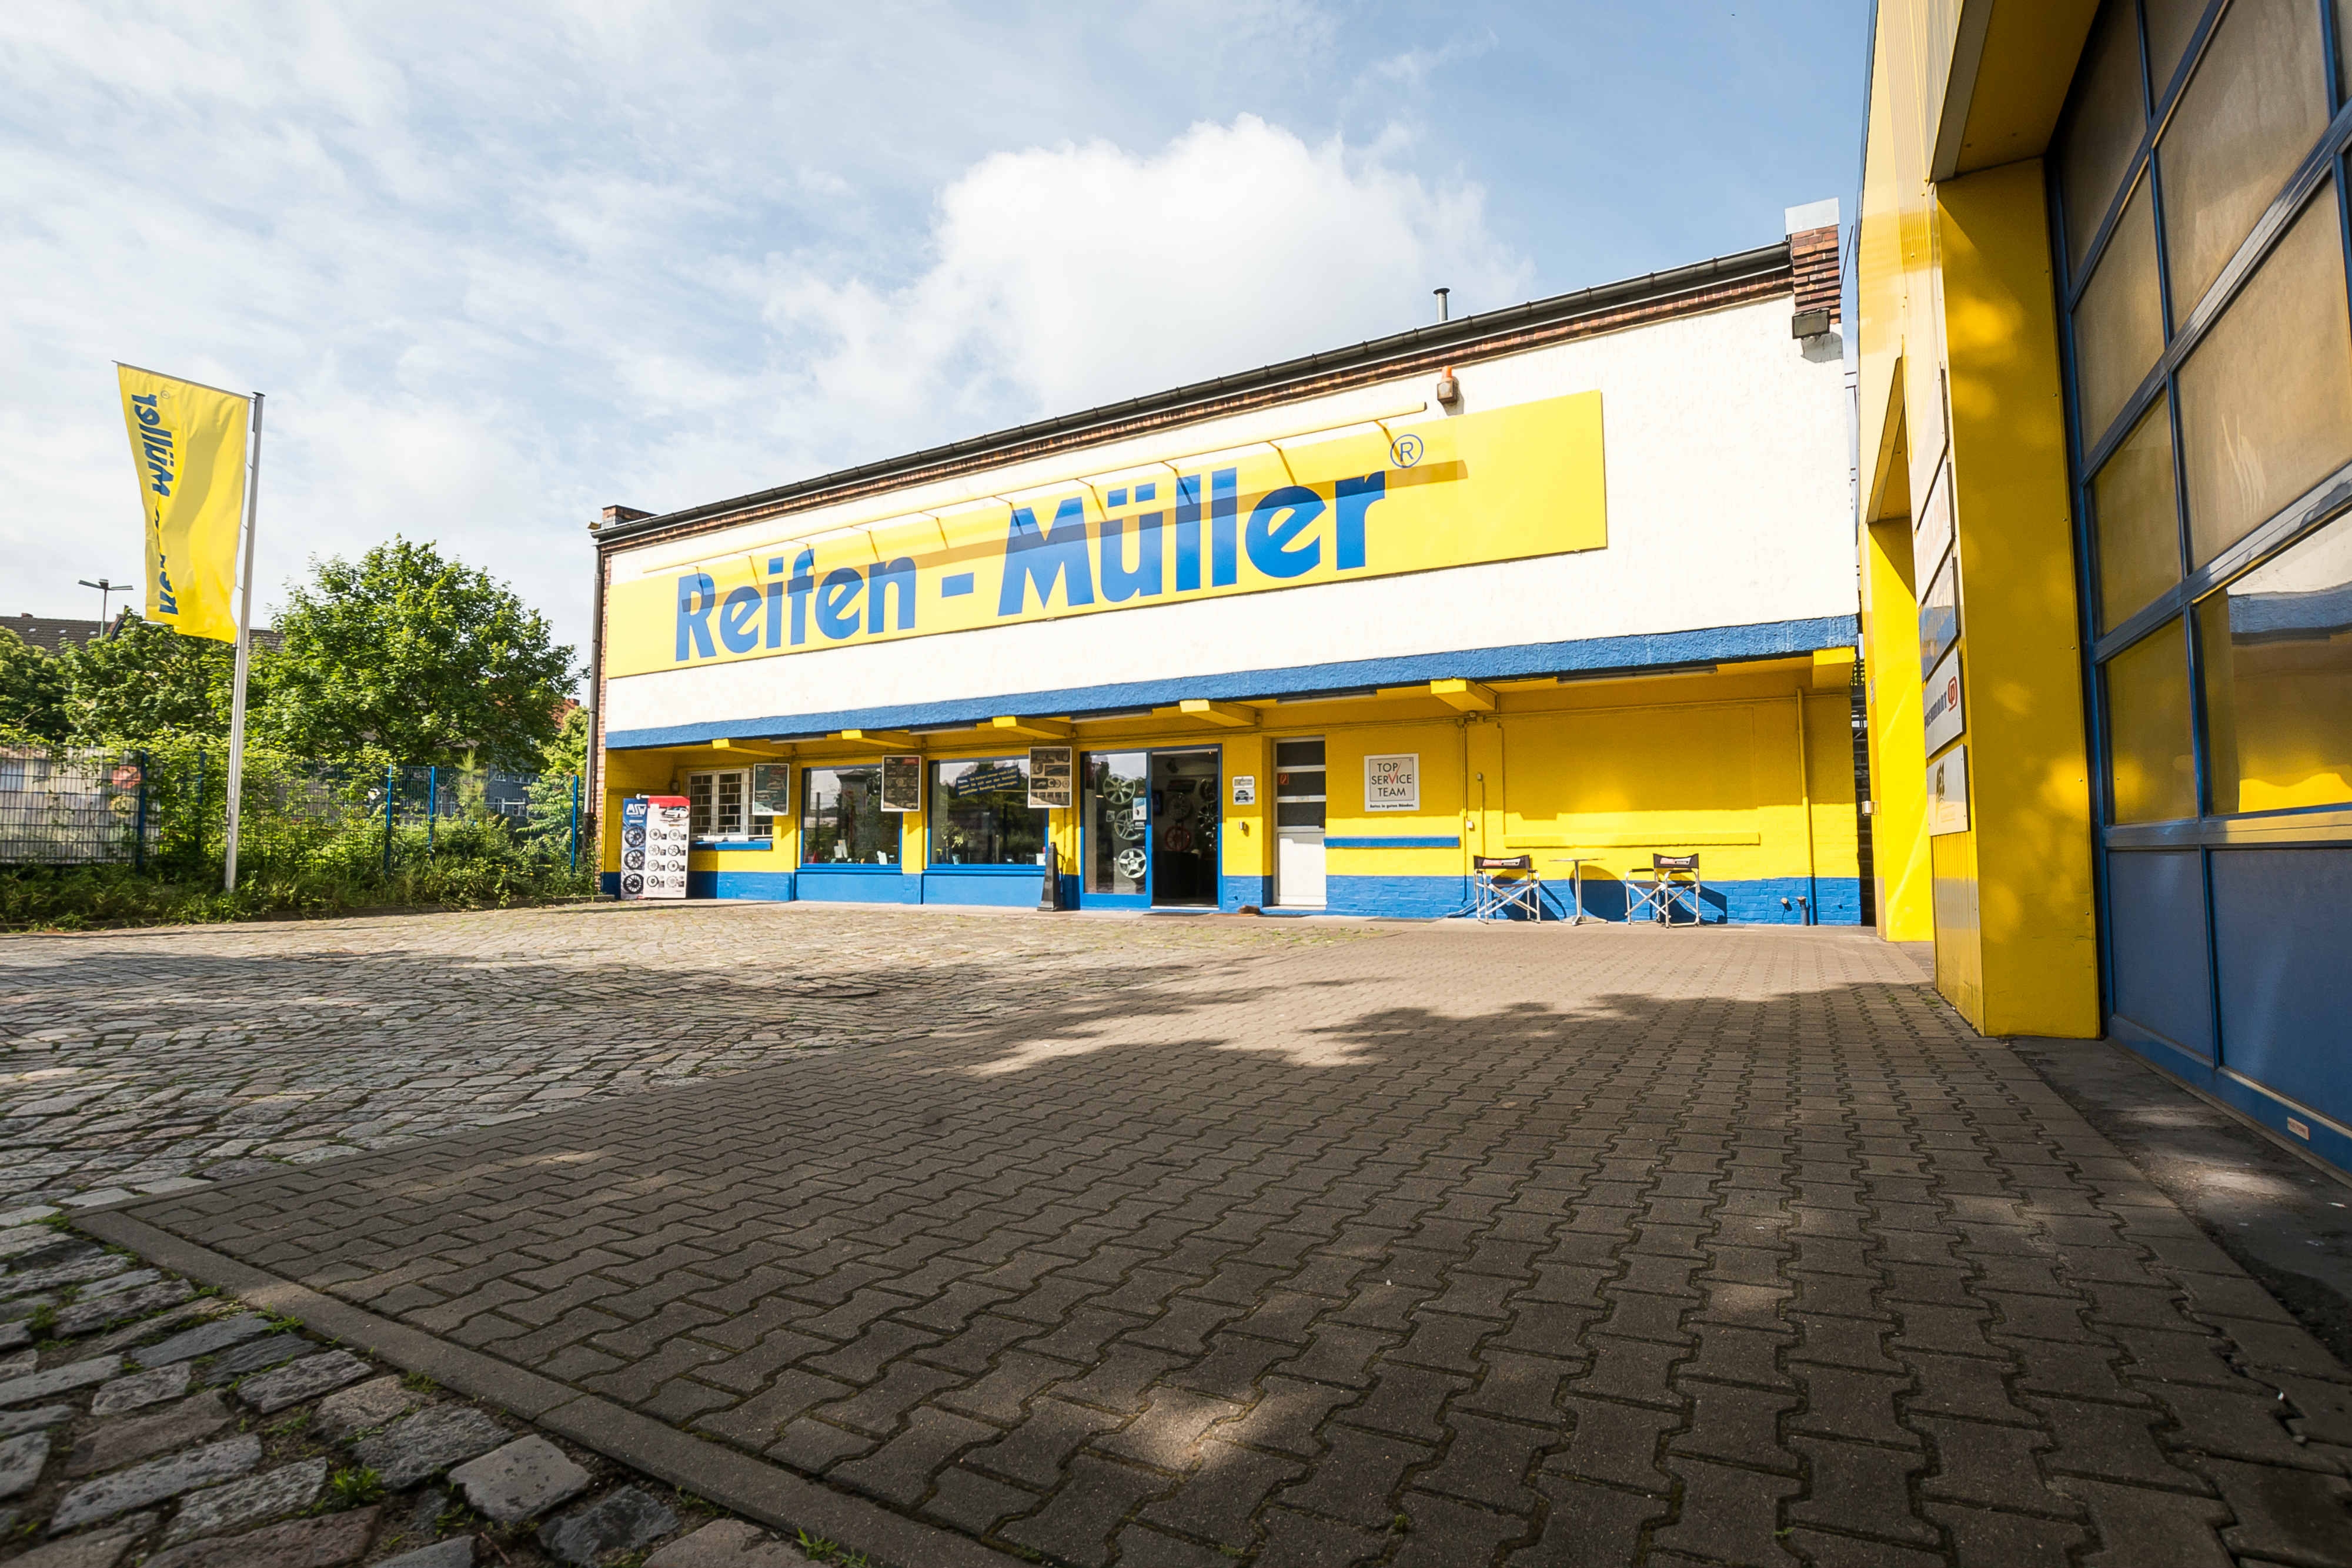 Bilder Reifen-Müller, Georg Müller GmbH & Co.KG